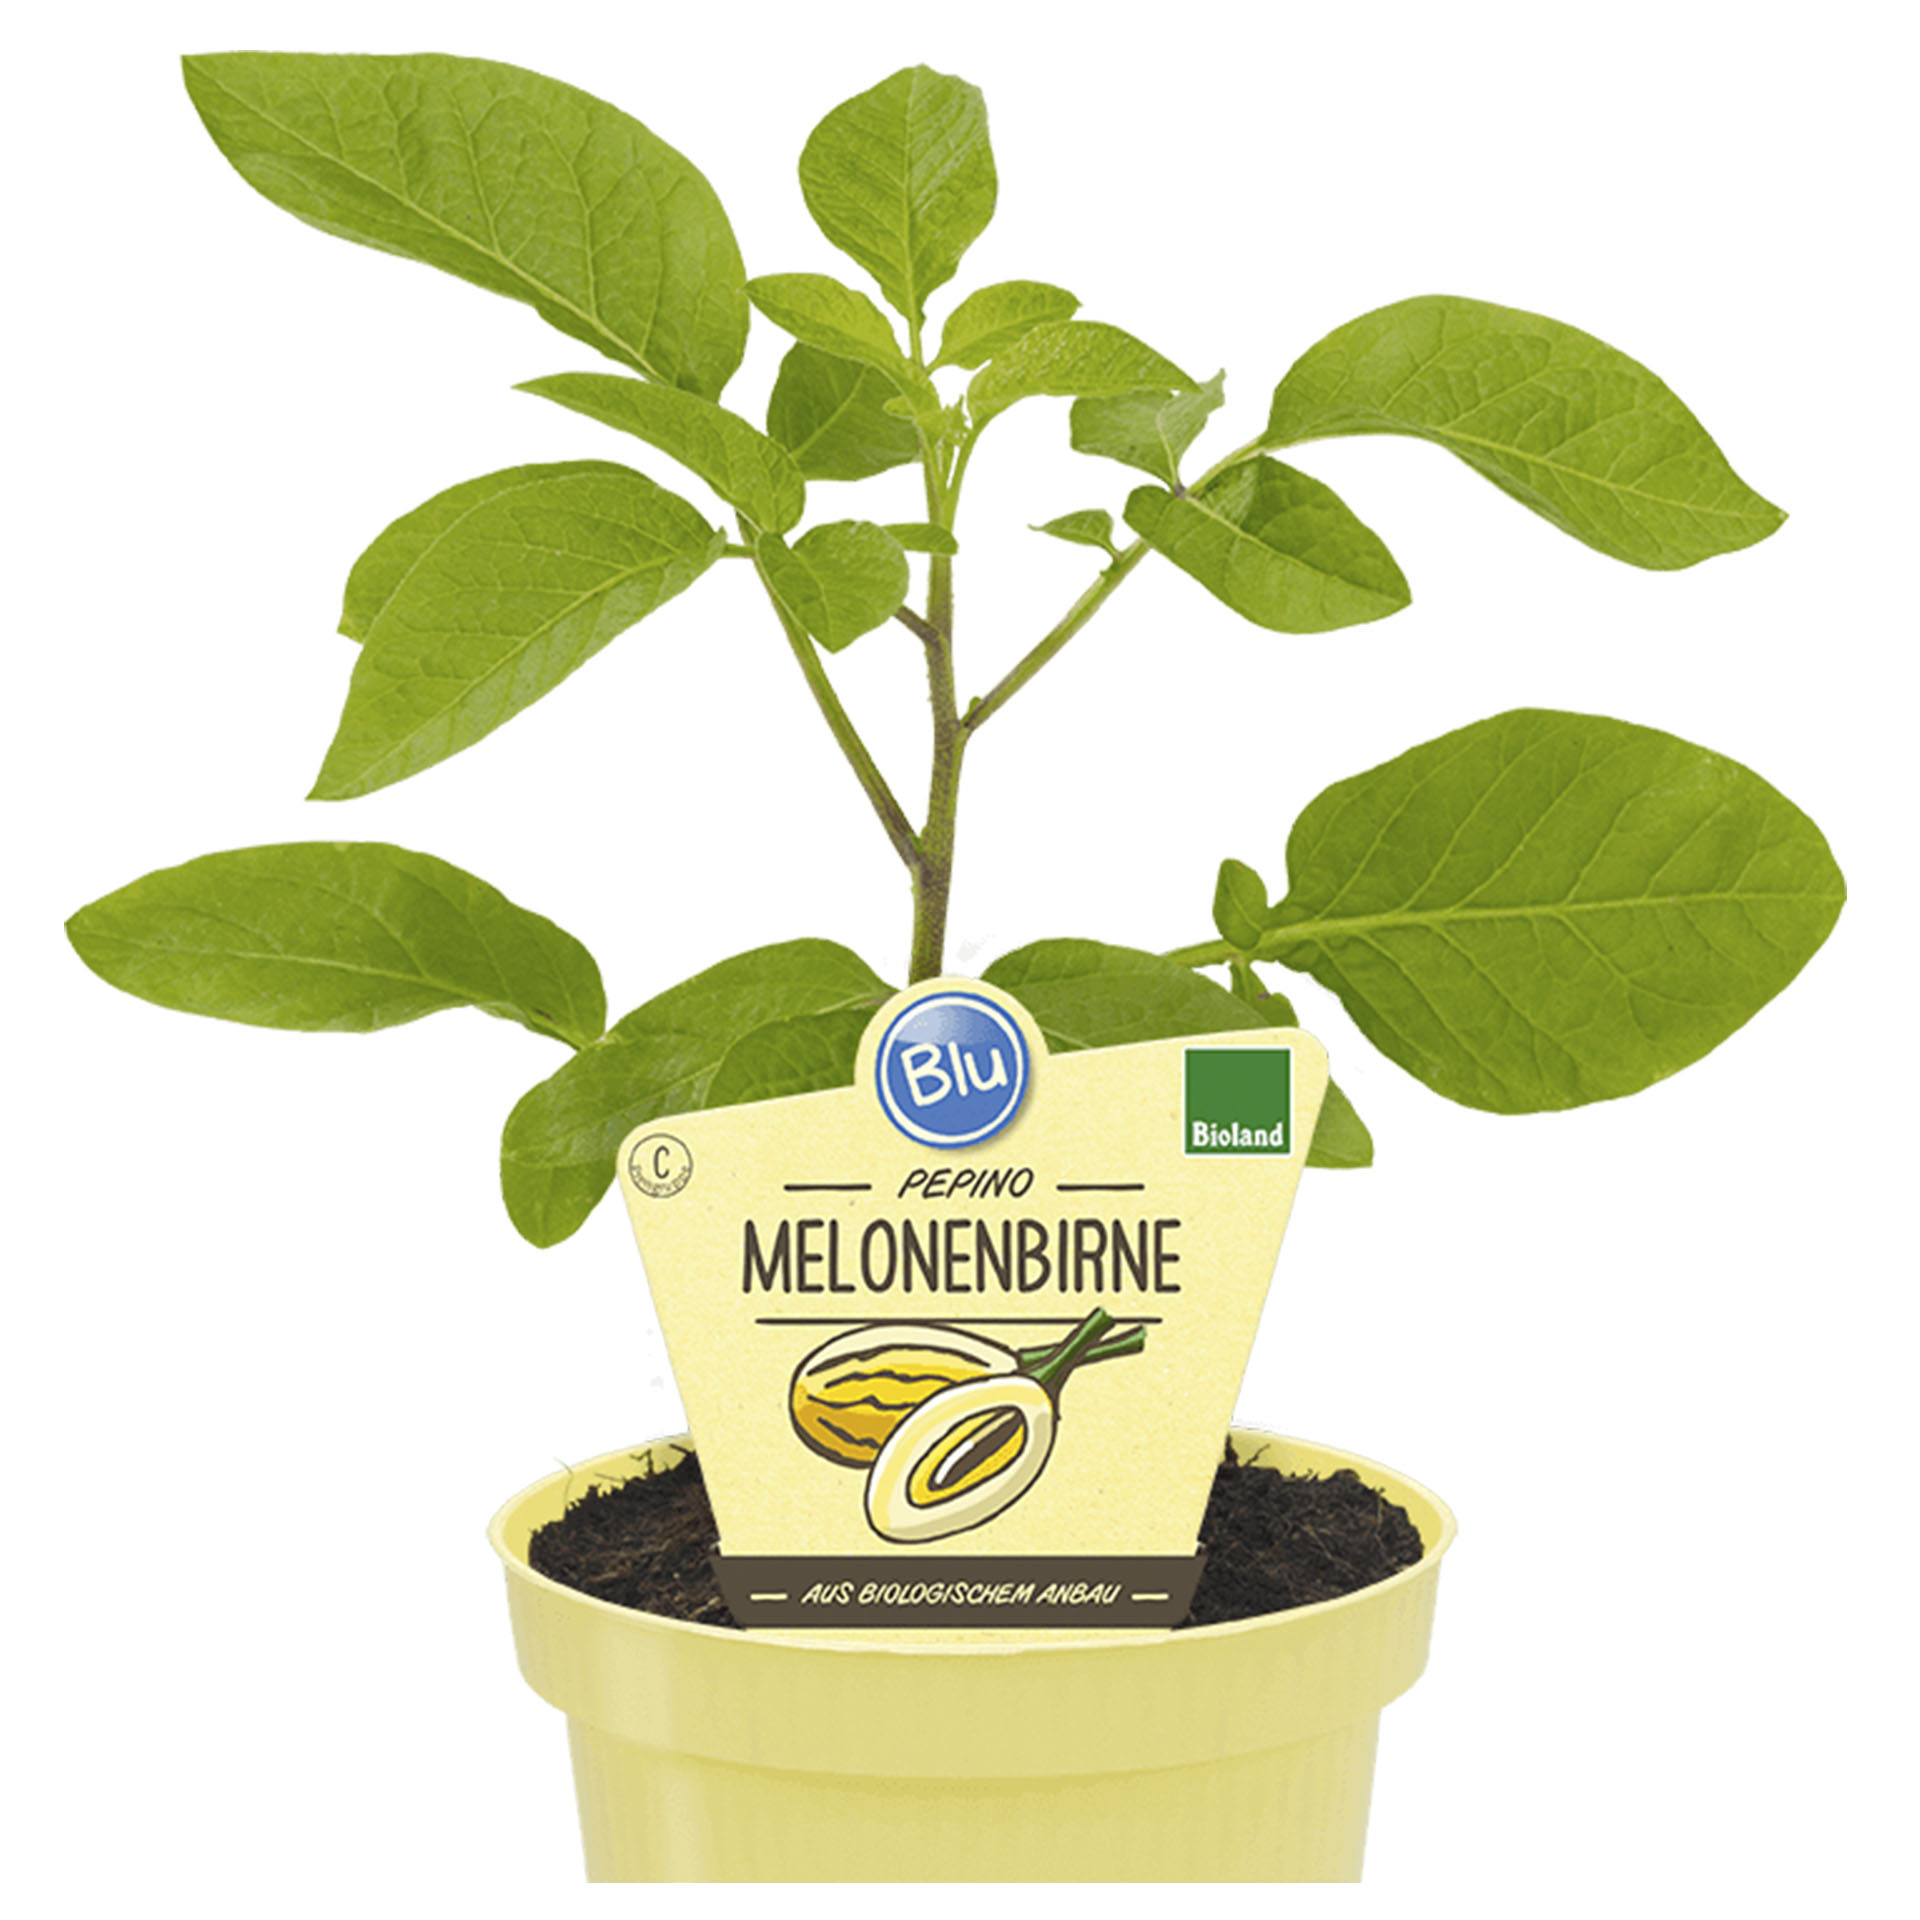 Melonenbirne Pepino im Pflanztopf mit Pflanzenstecker